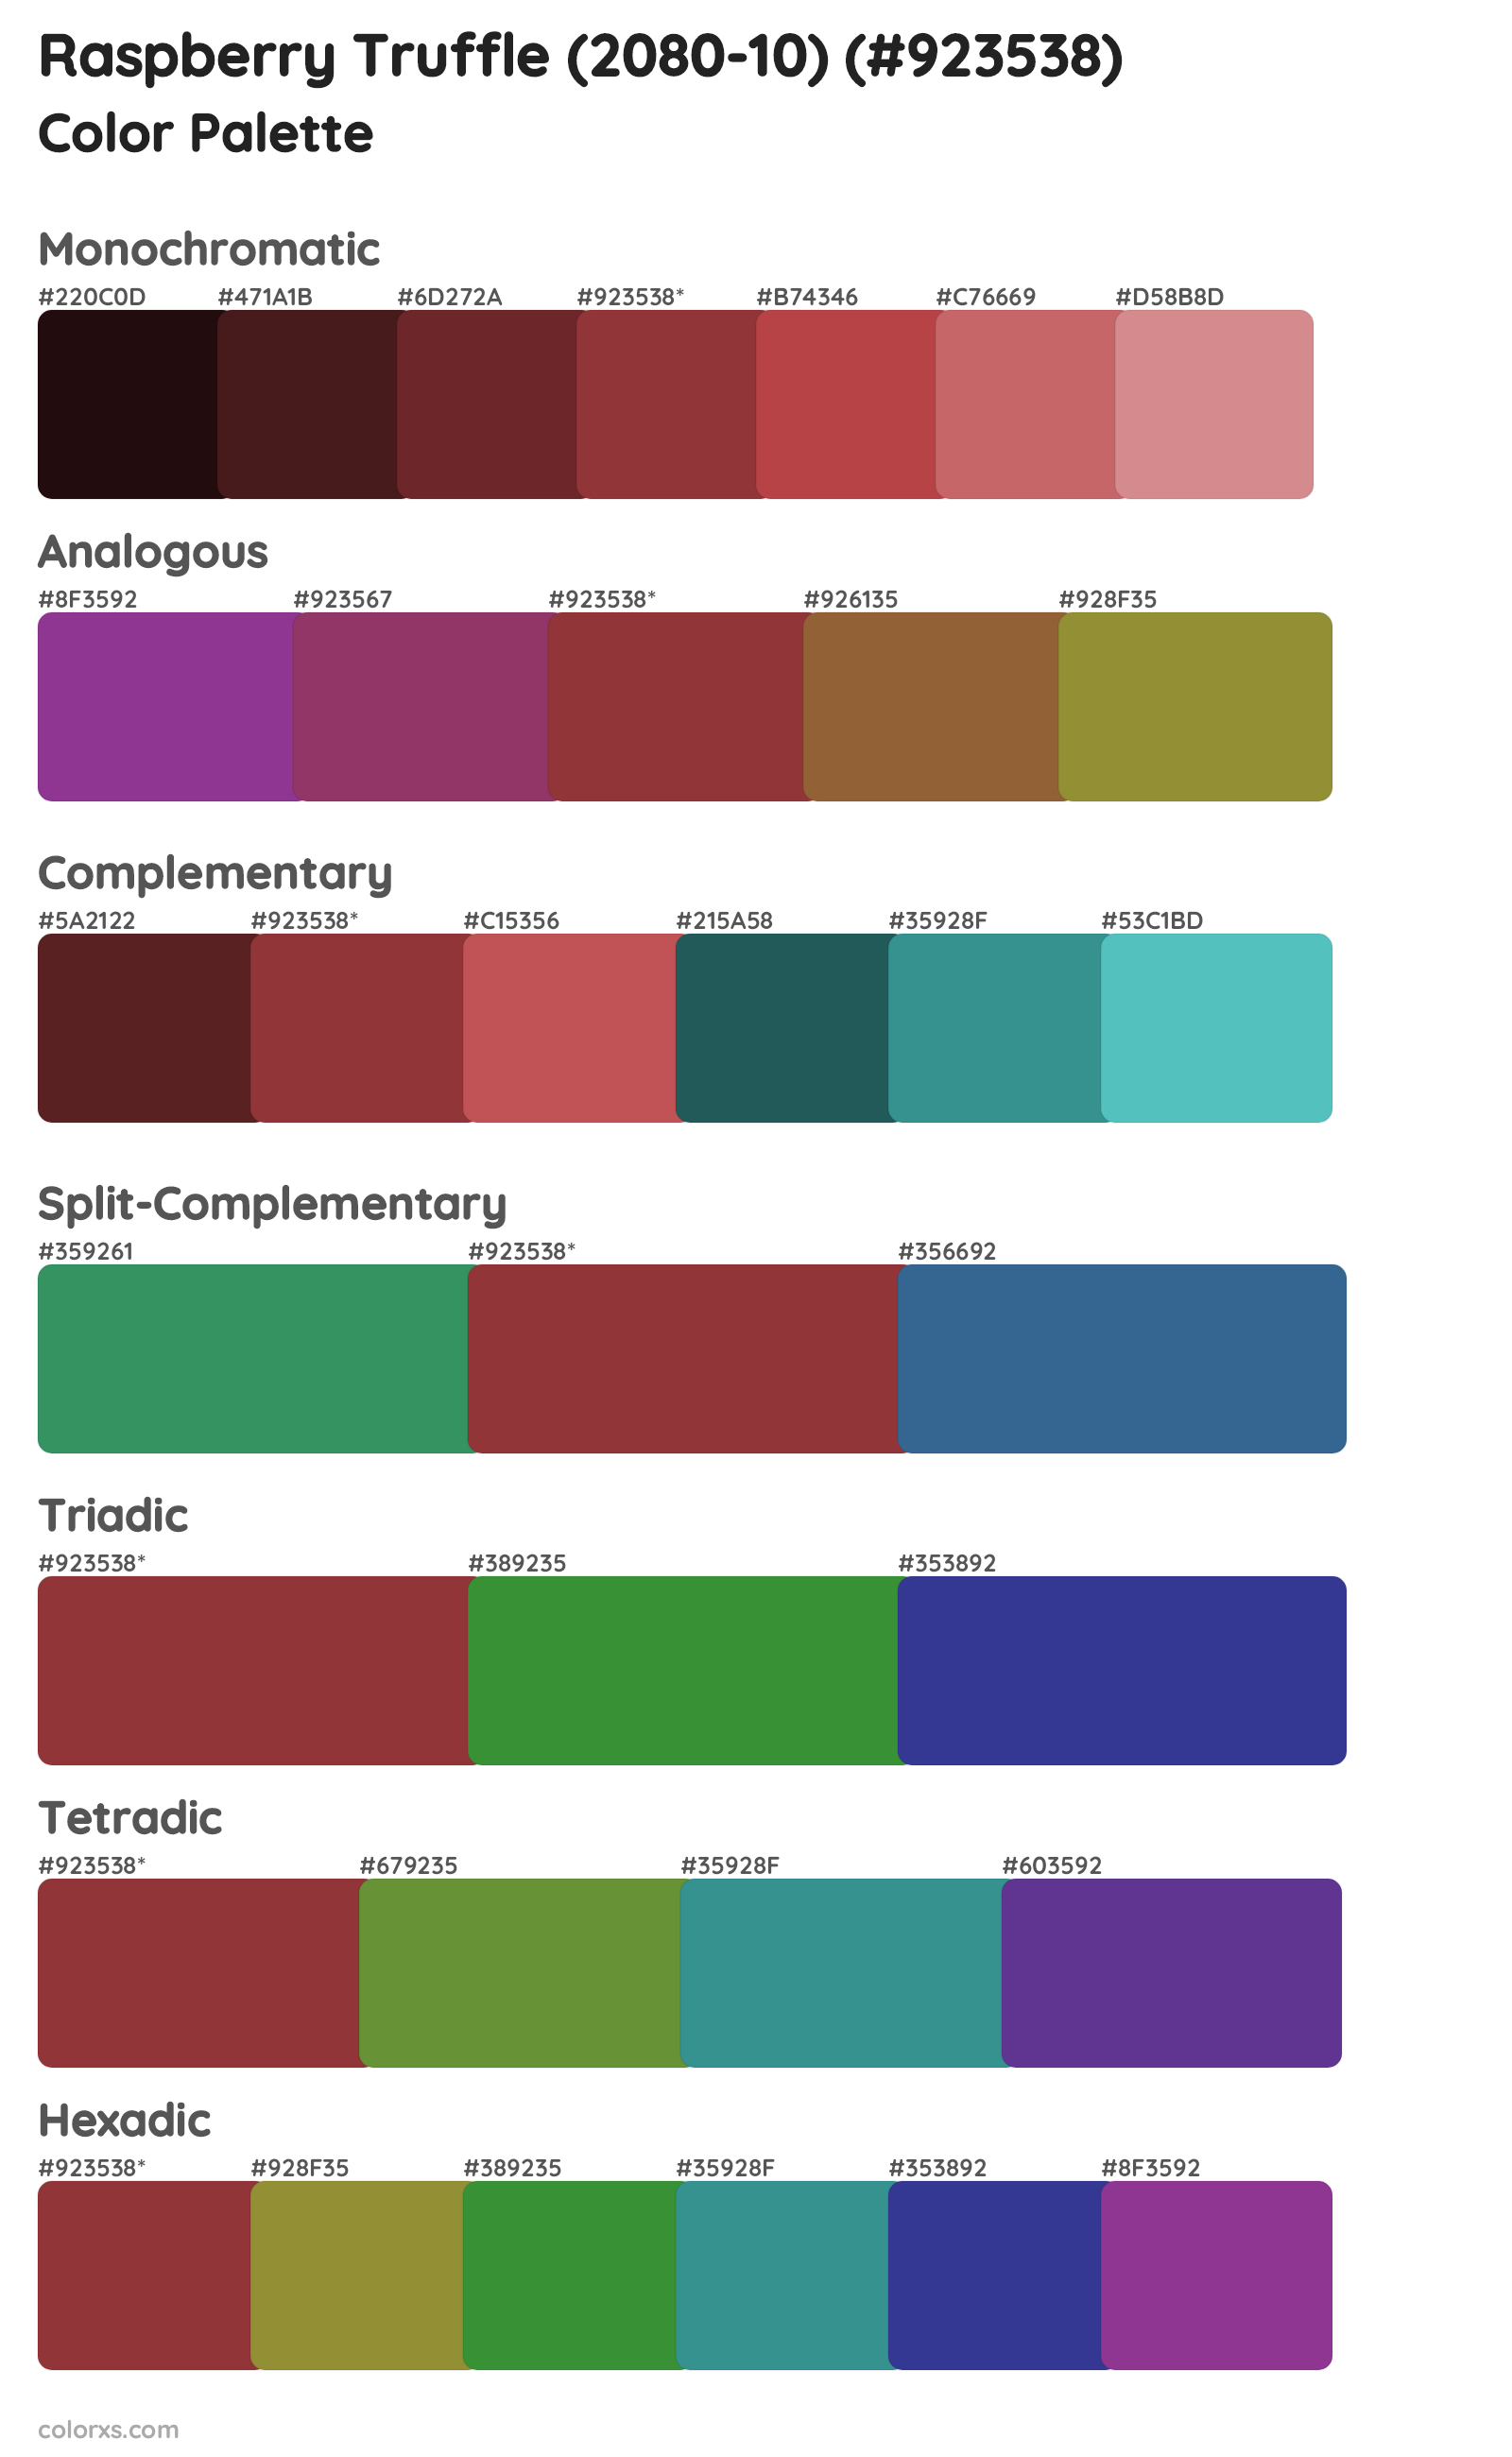 Raspberry Truffle (2080-10) Color Scheme Palettes